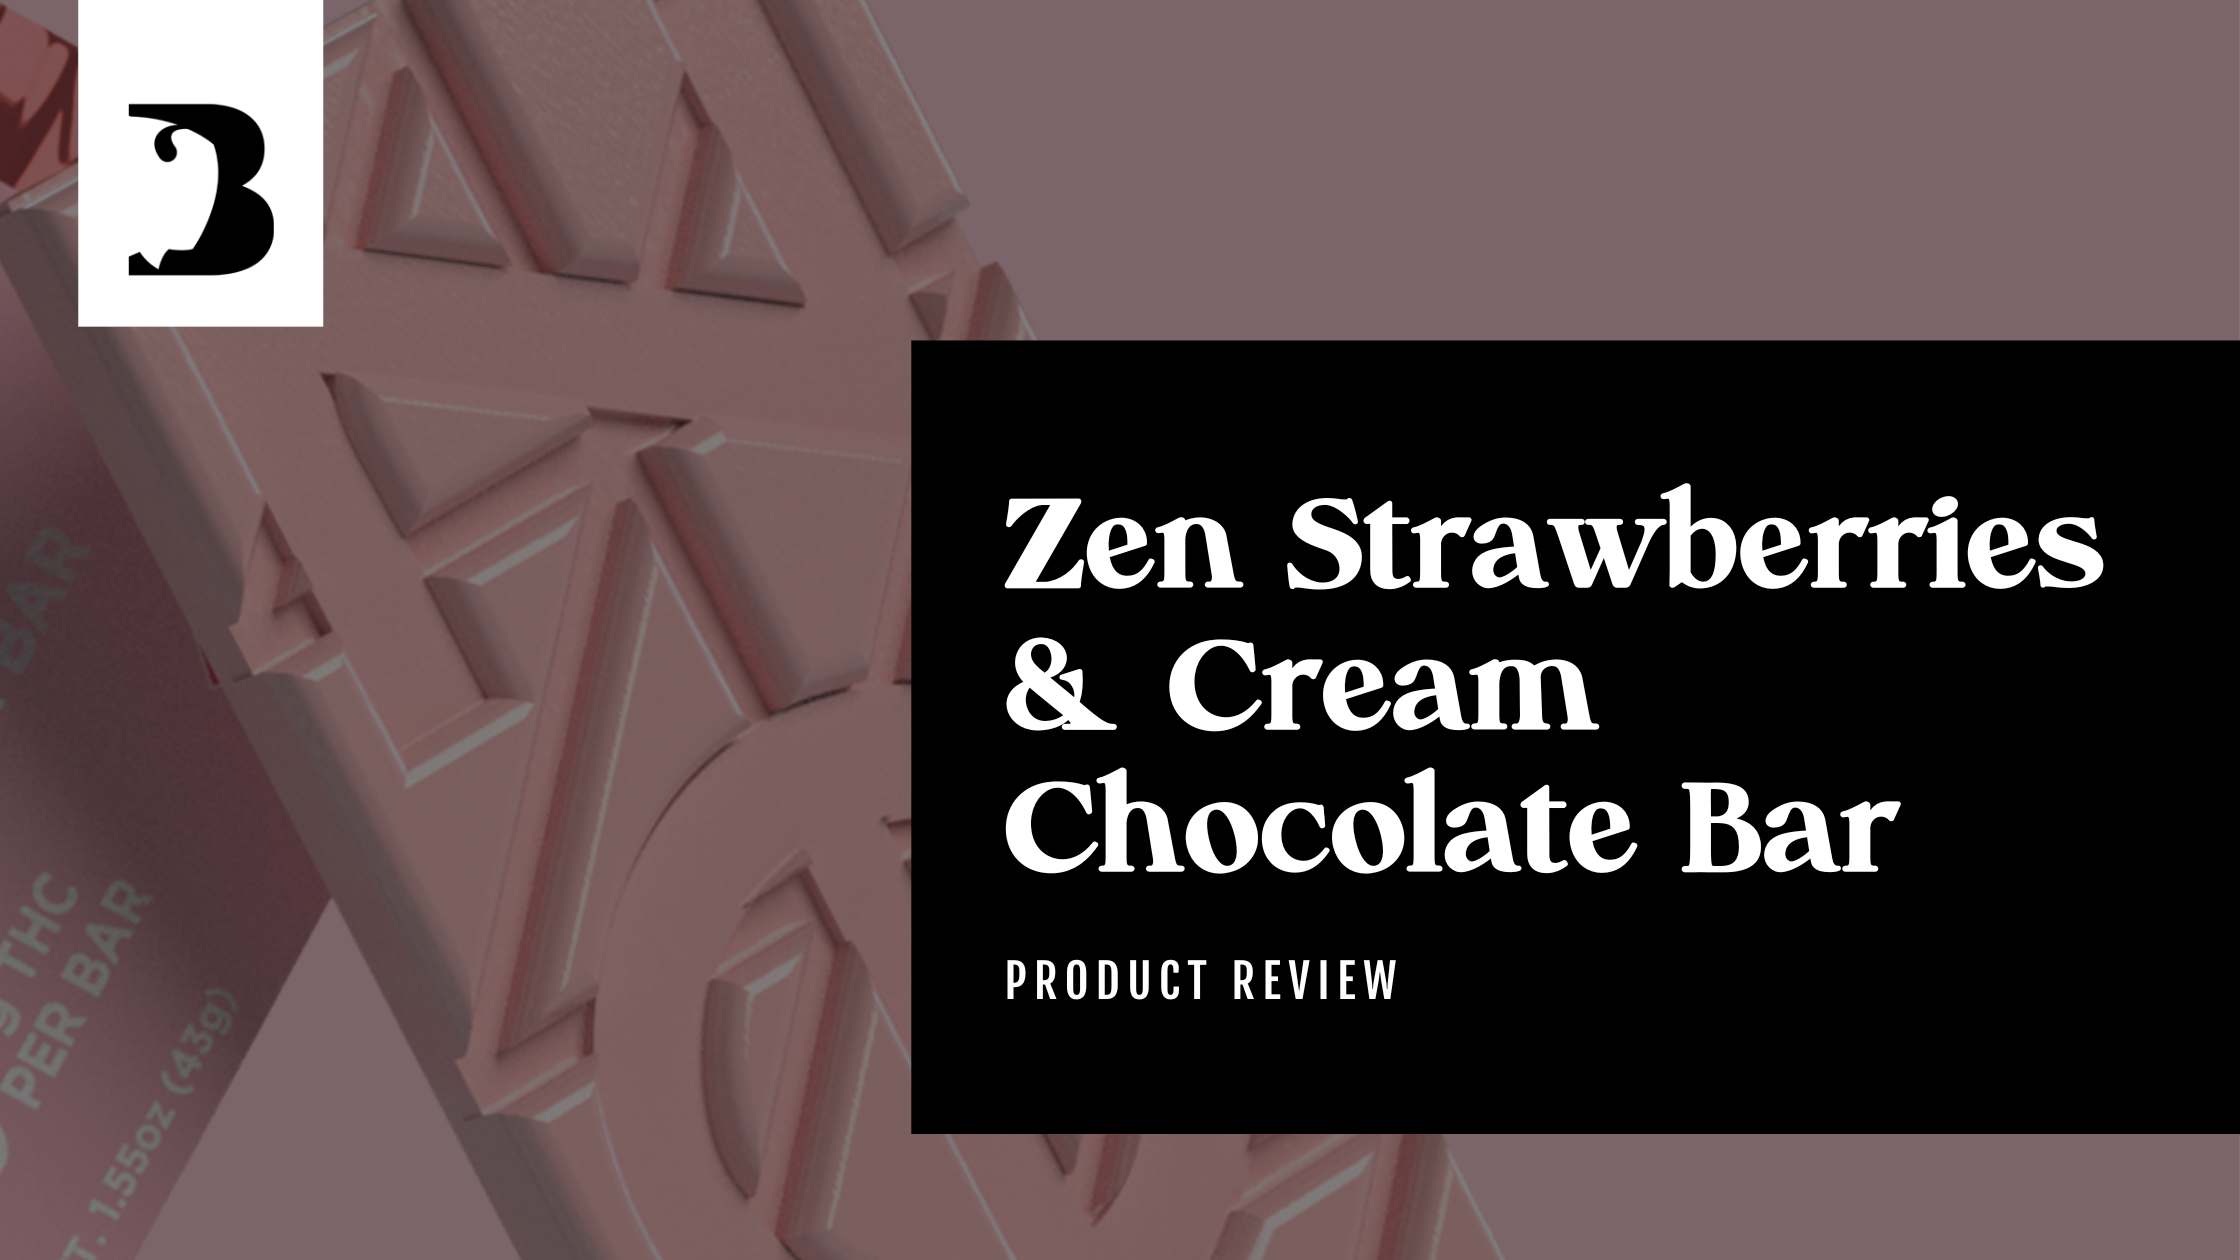 Zen Strawberries & Cream Chocolate Bar